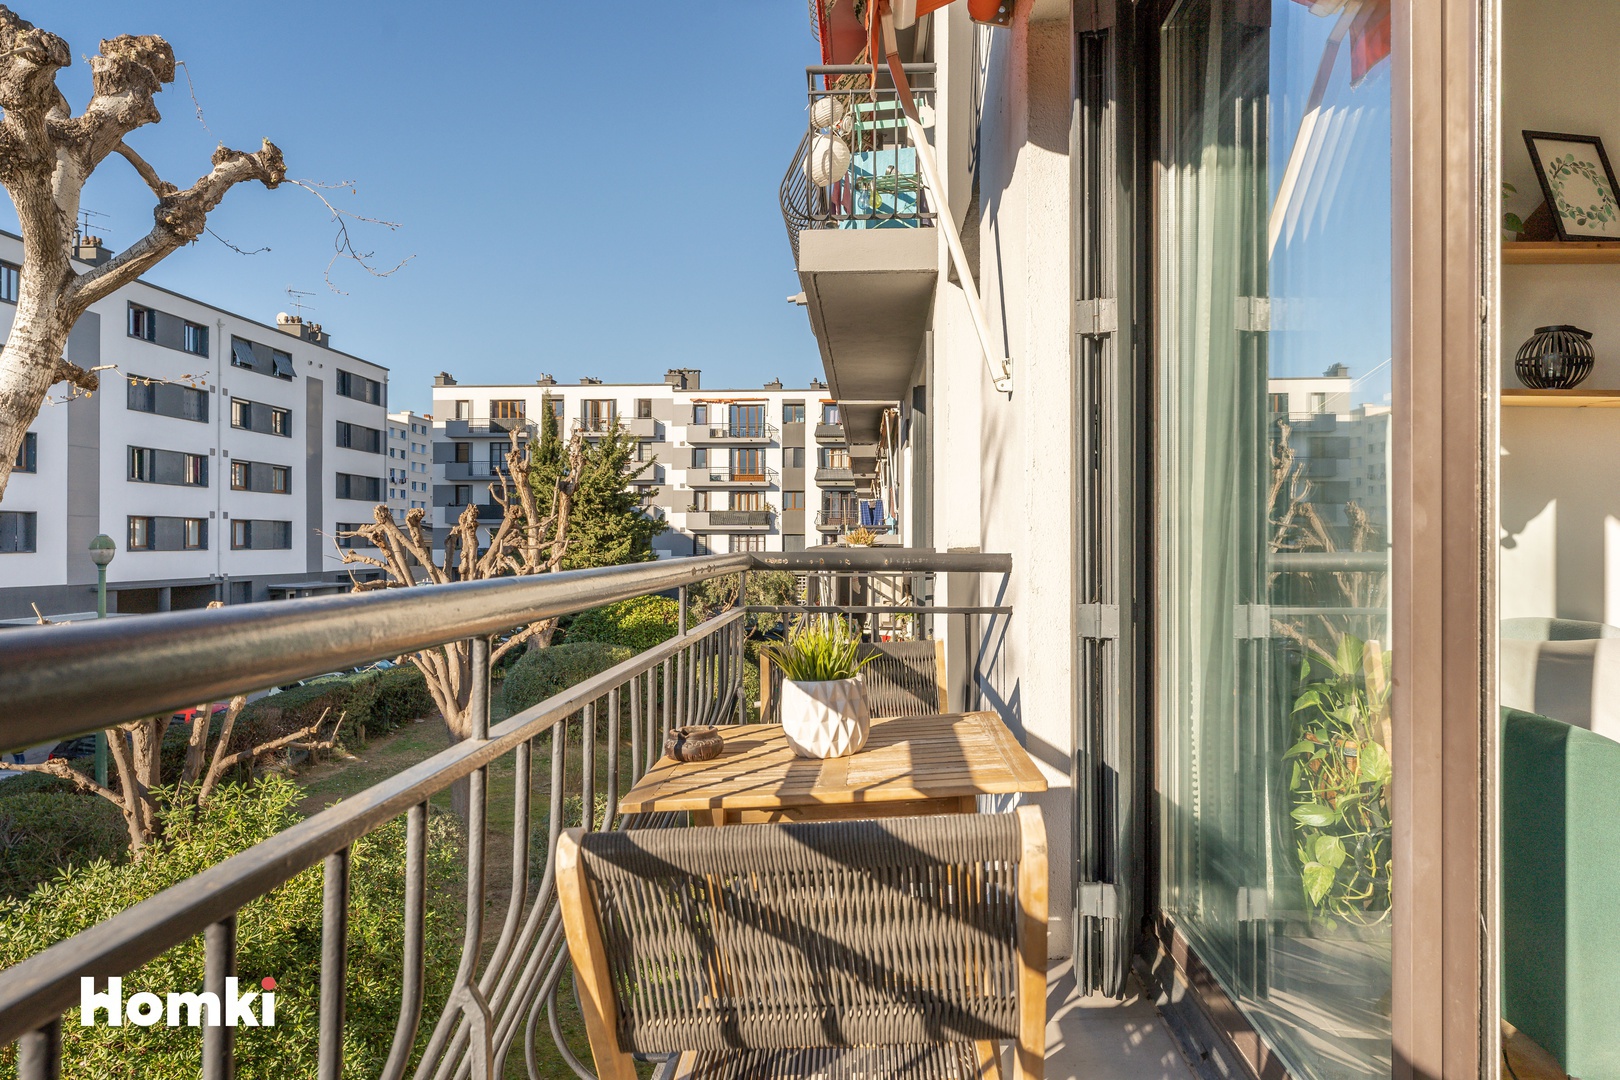 Homki - Vente Appartement  de 56.0 m² à Marseille 13012